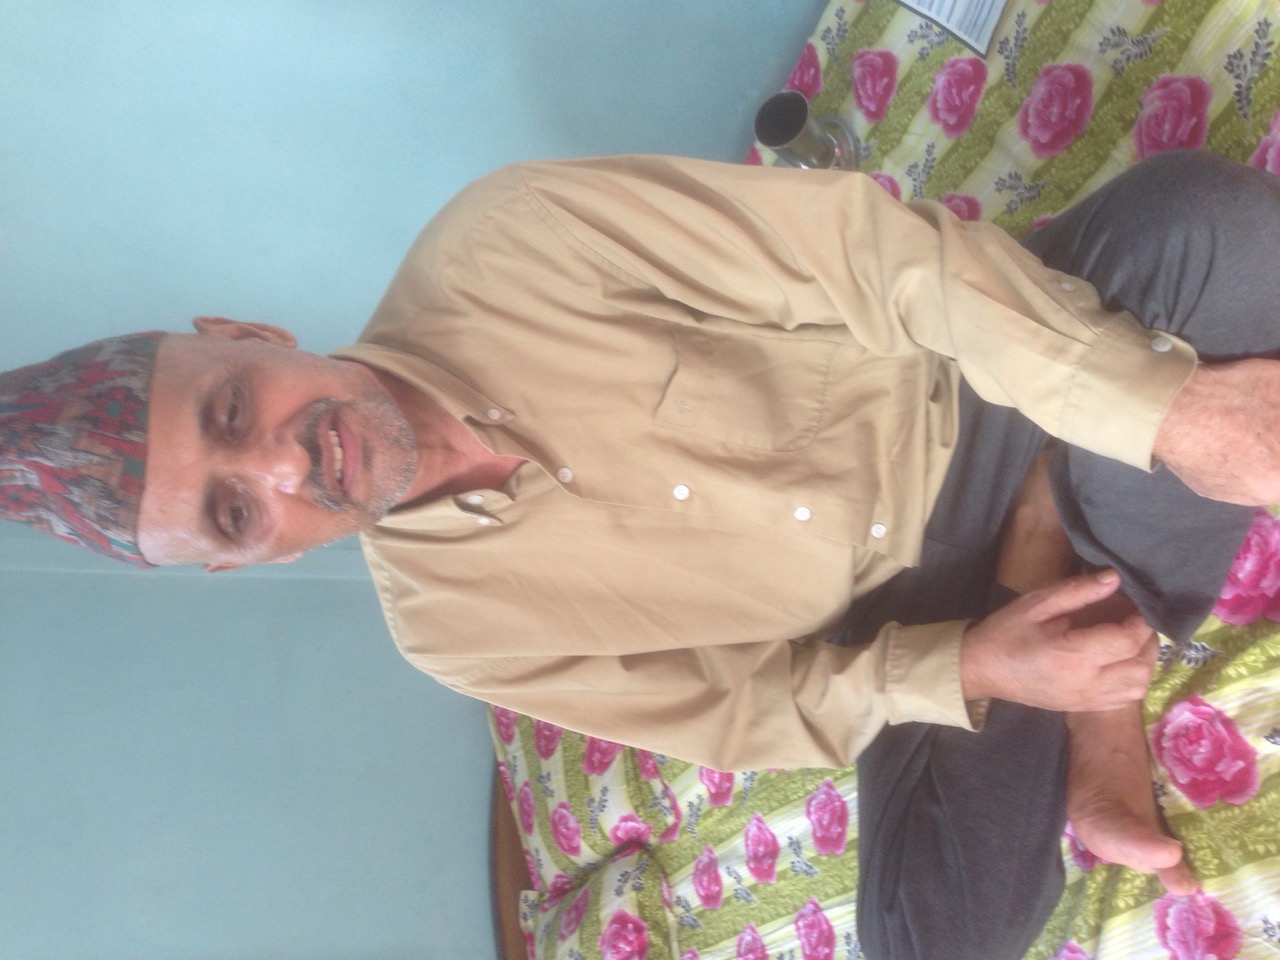 Him Prasad Gautam undergone treatment of Brain Cancer